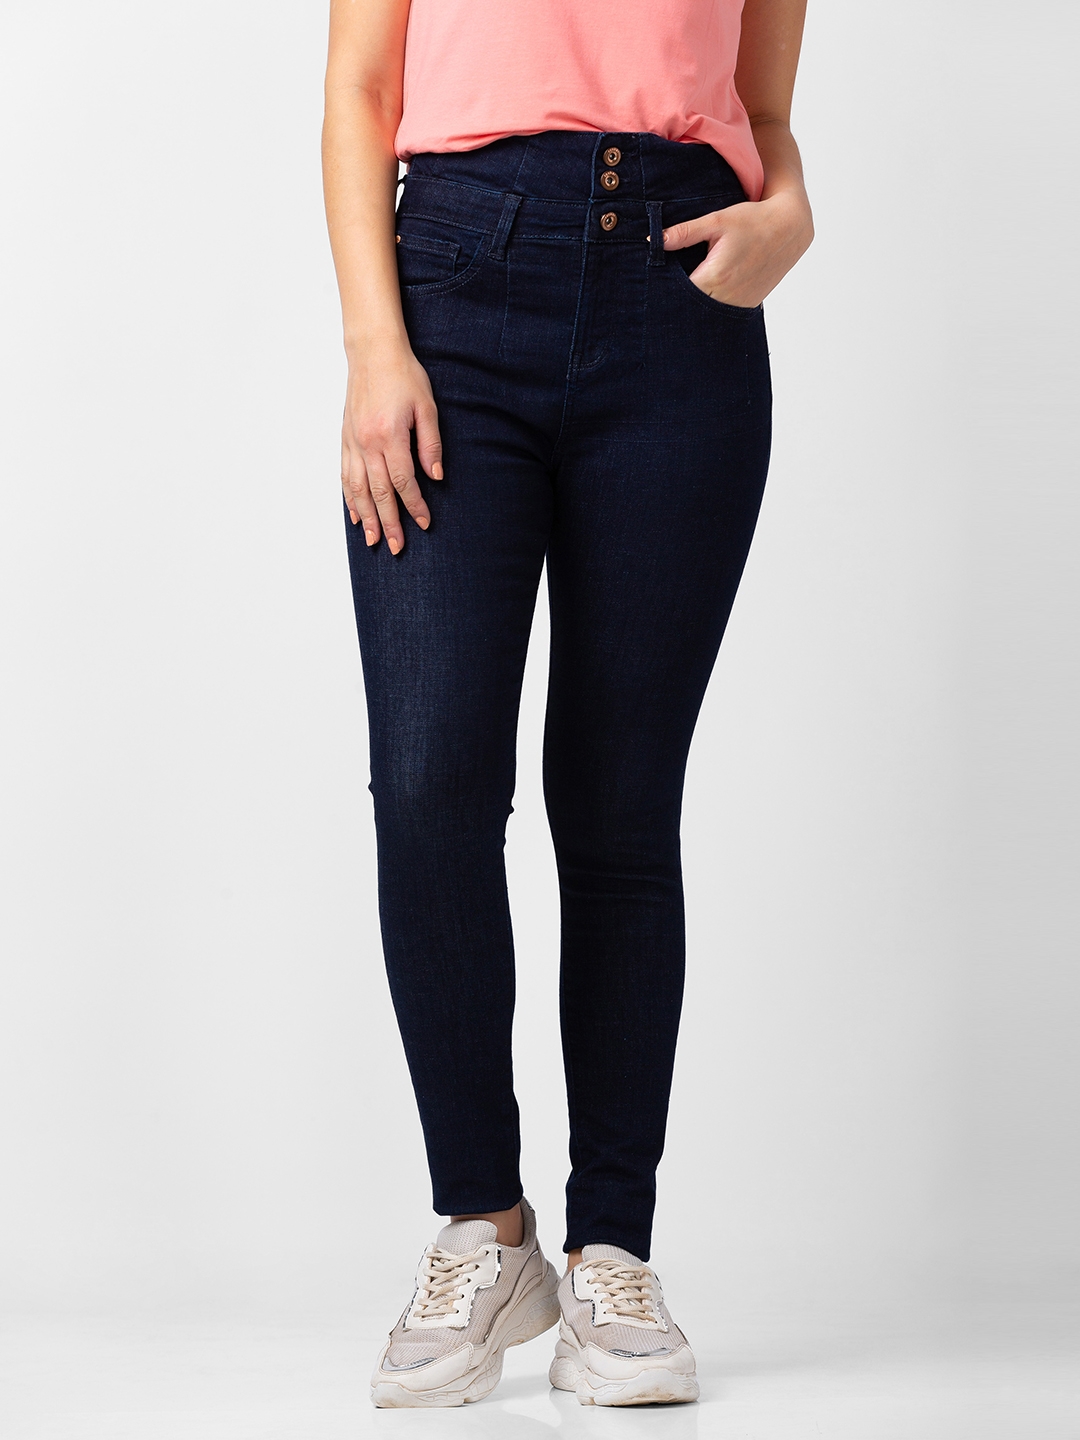 spykar | Women's Blue Lycra Solid Jeans 0